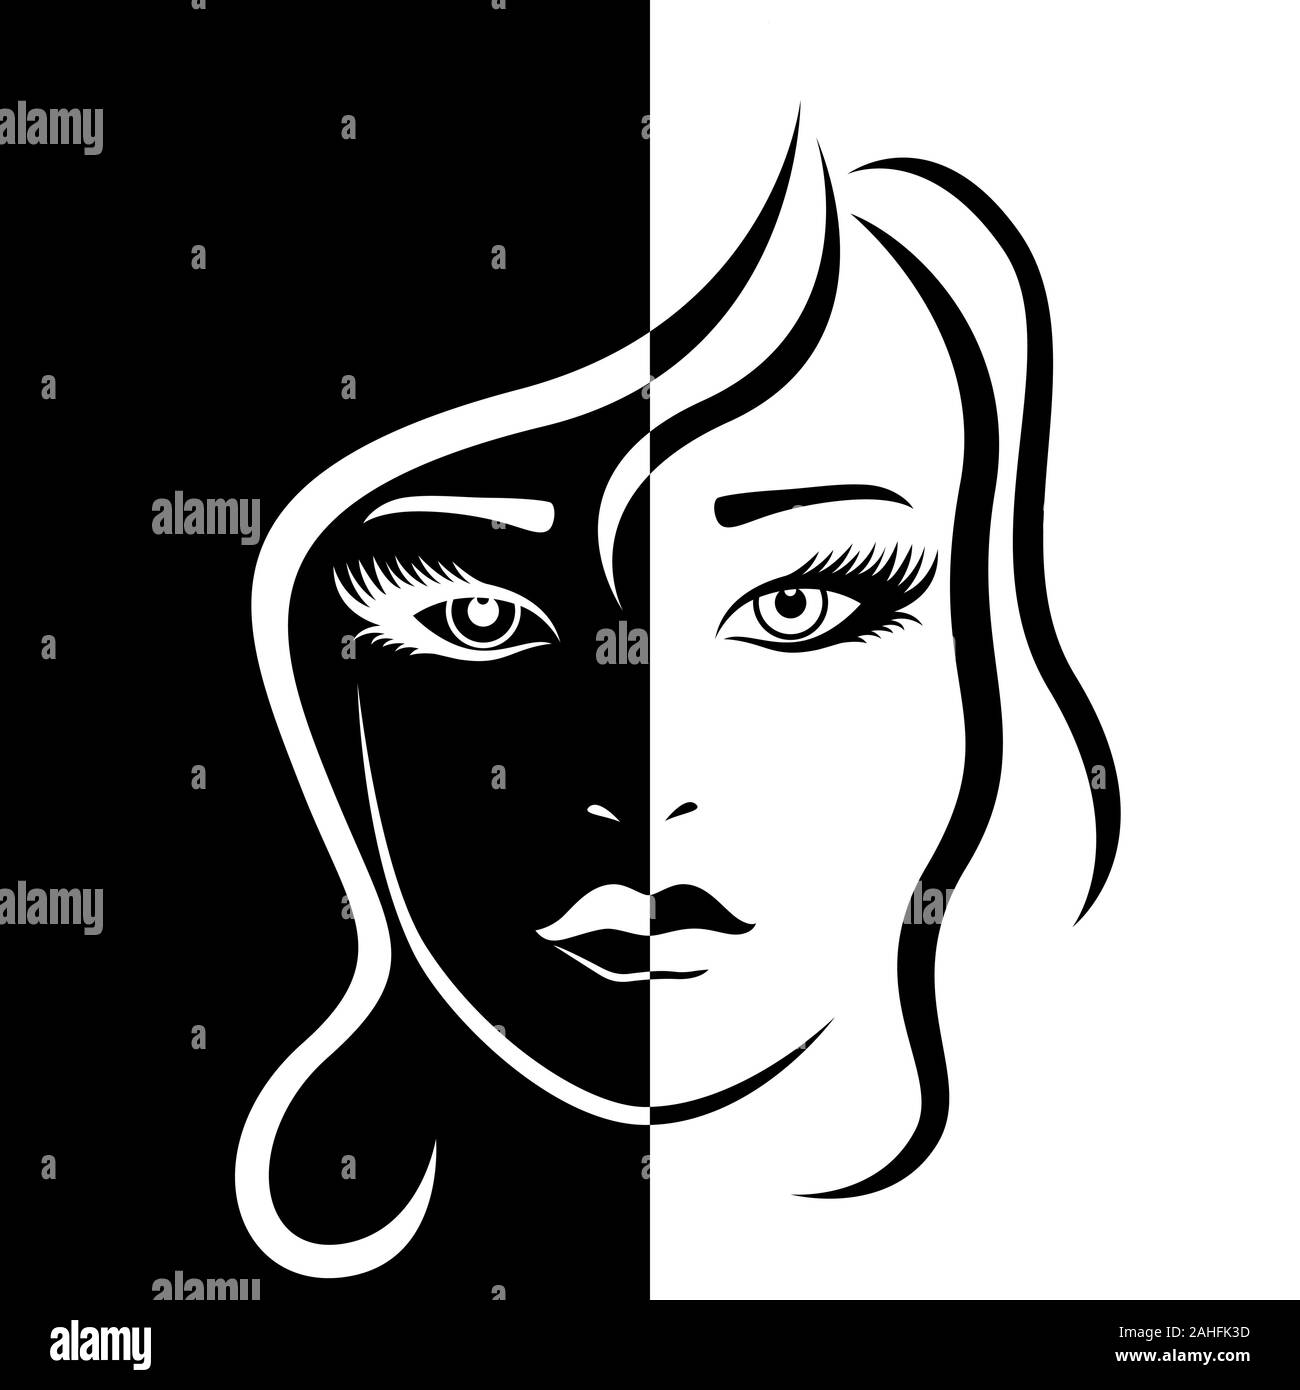 Abstrakte schöne weibliche Gesicht in Negativ Positiv Raum, Schwarze und Weiße konzeptionelle Ausdruck, hand Zeichnung Abbildung Stock Vektor